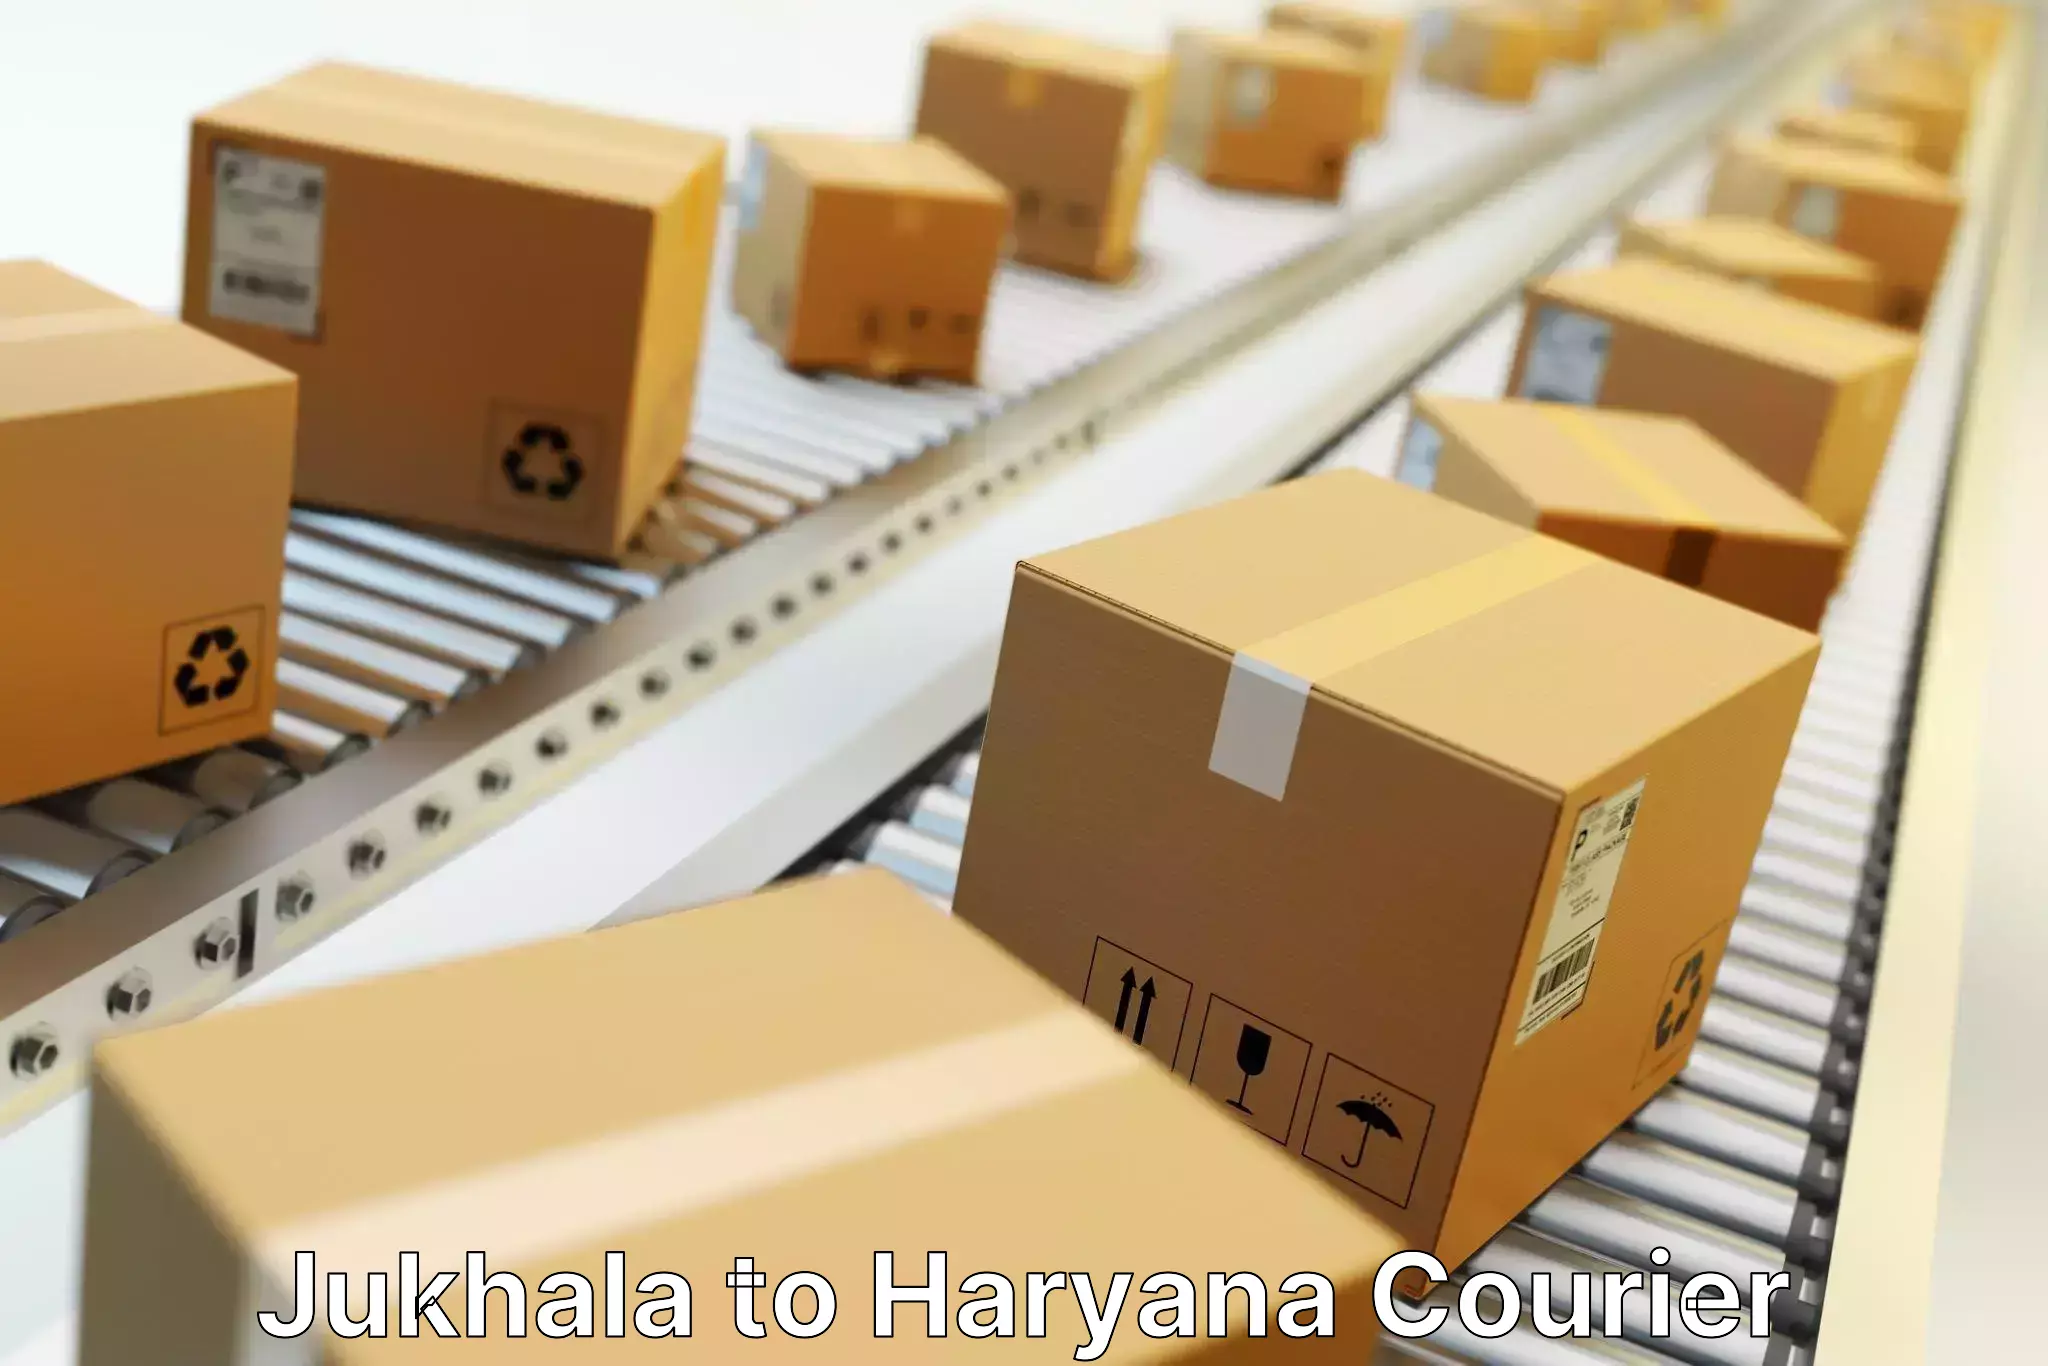 Customizable shipping options Jukhala to Hansi